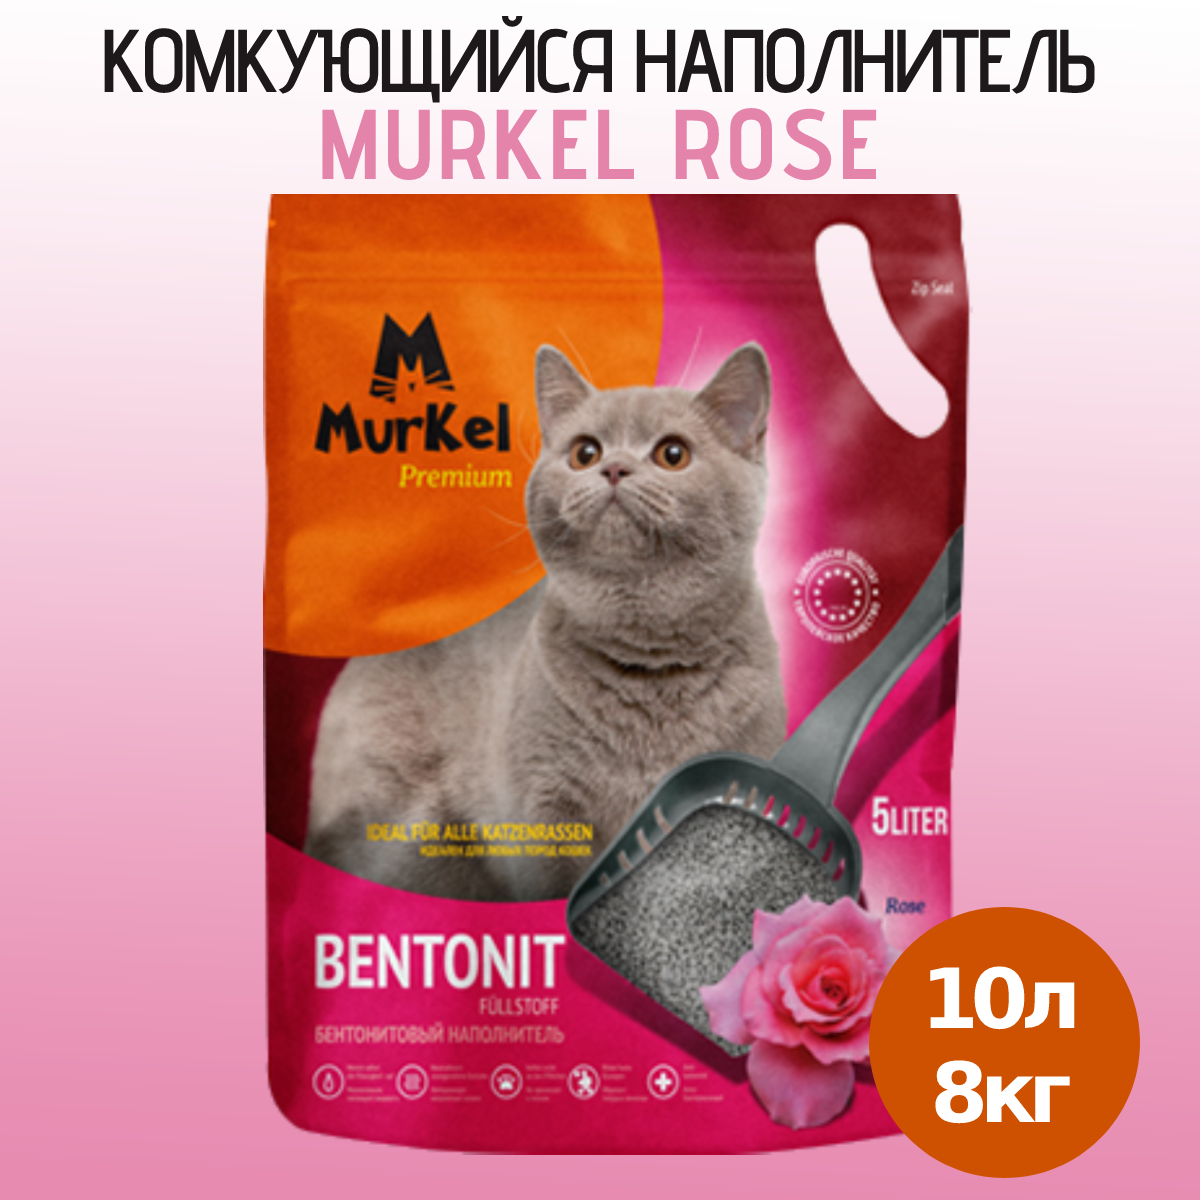 Наполнитель для кошачьего туалета Murkel, бентонитовый, с ароматом розы, 10 л